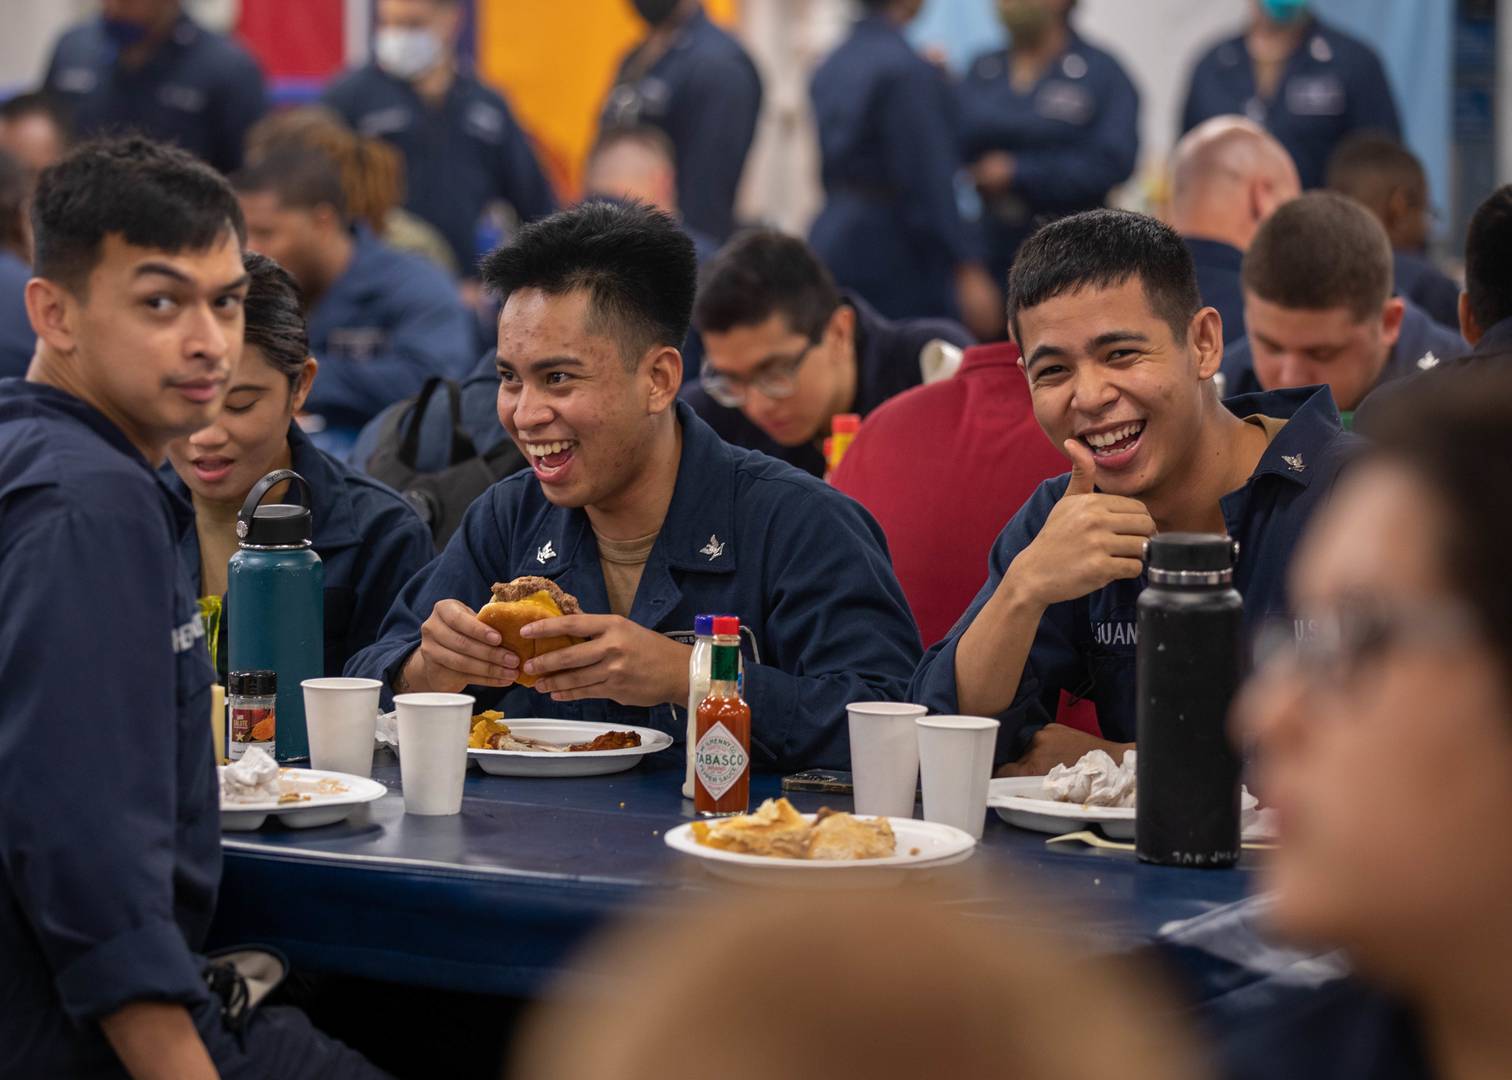 Американские военнослужащие демонстрируют хороший аппетит на борту десантного корабля USS Bataan (LHD 5)